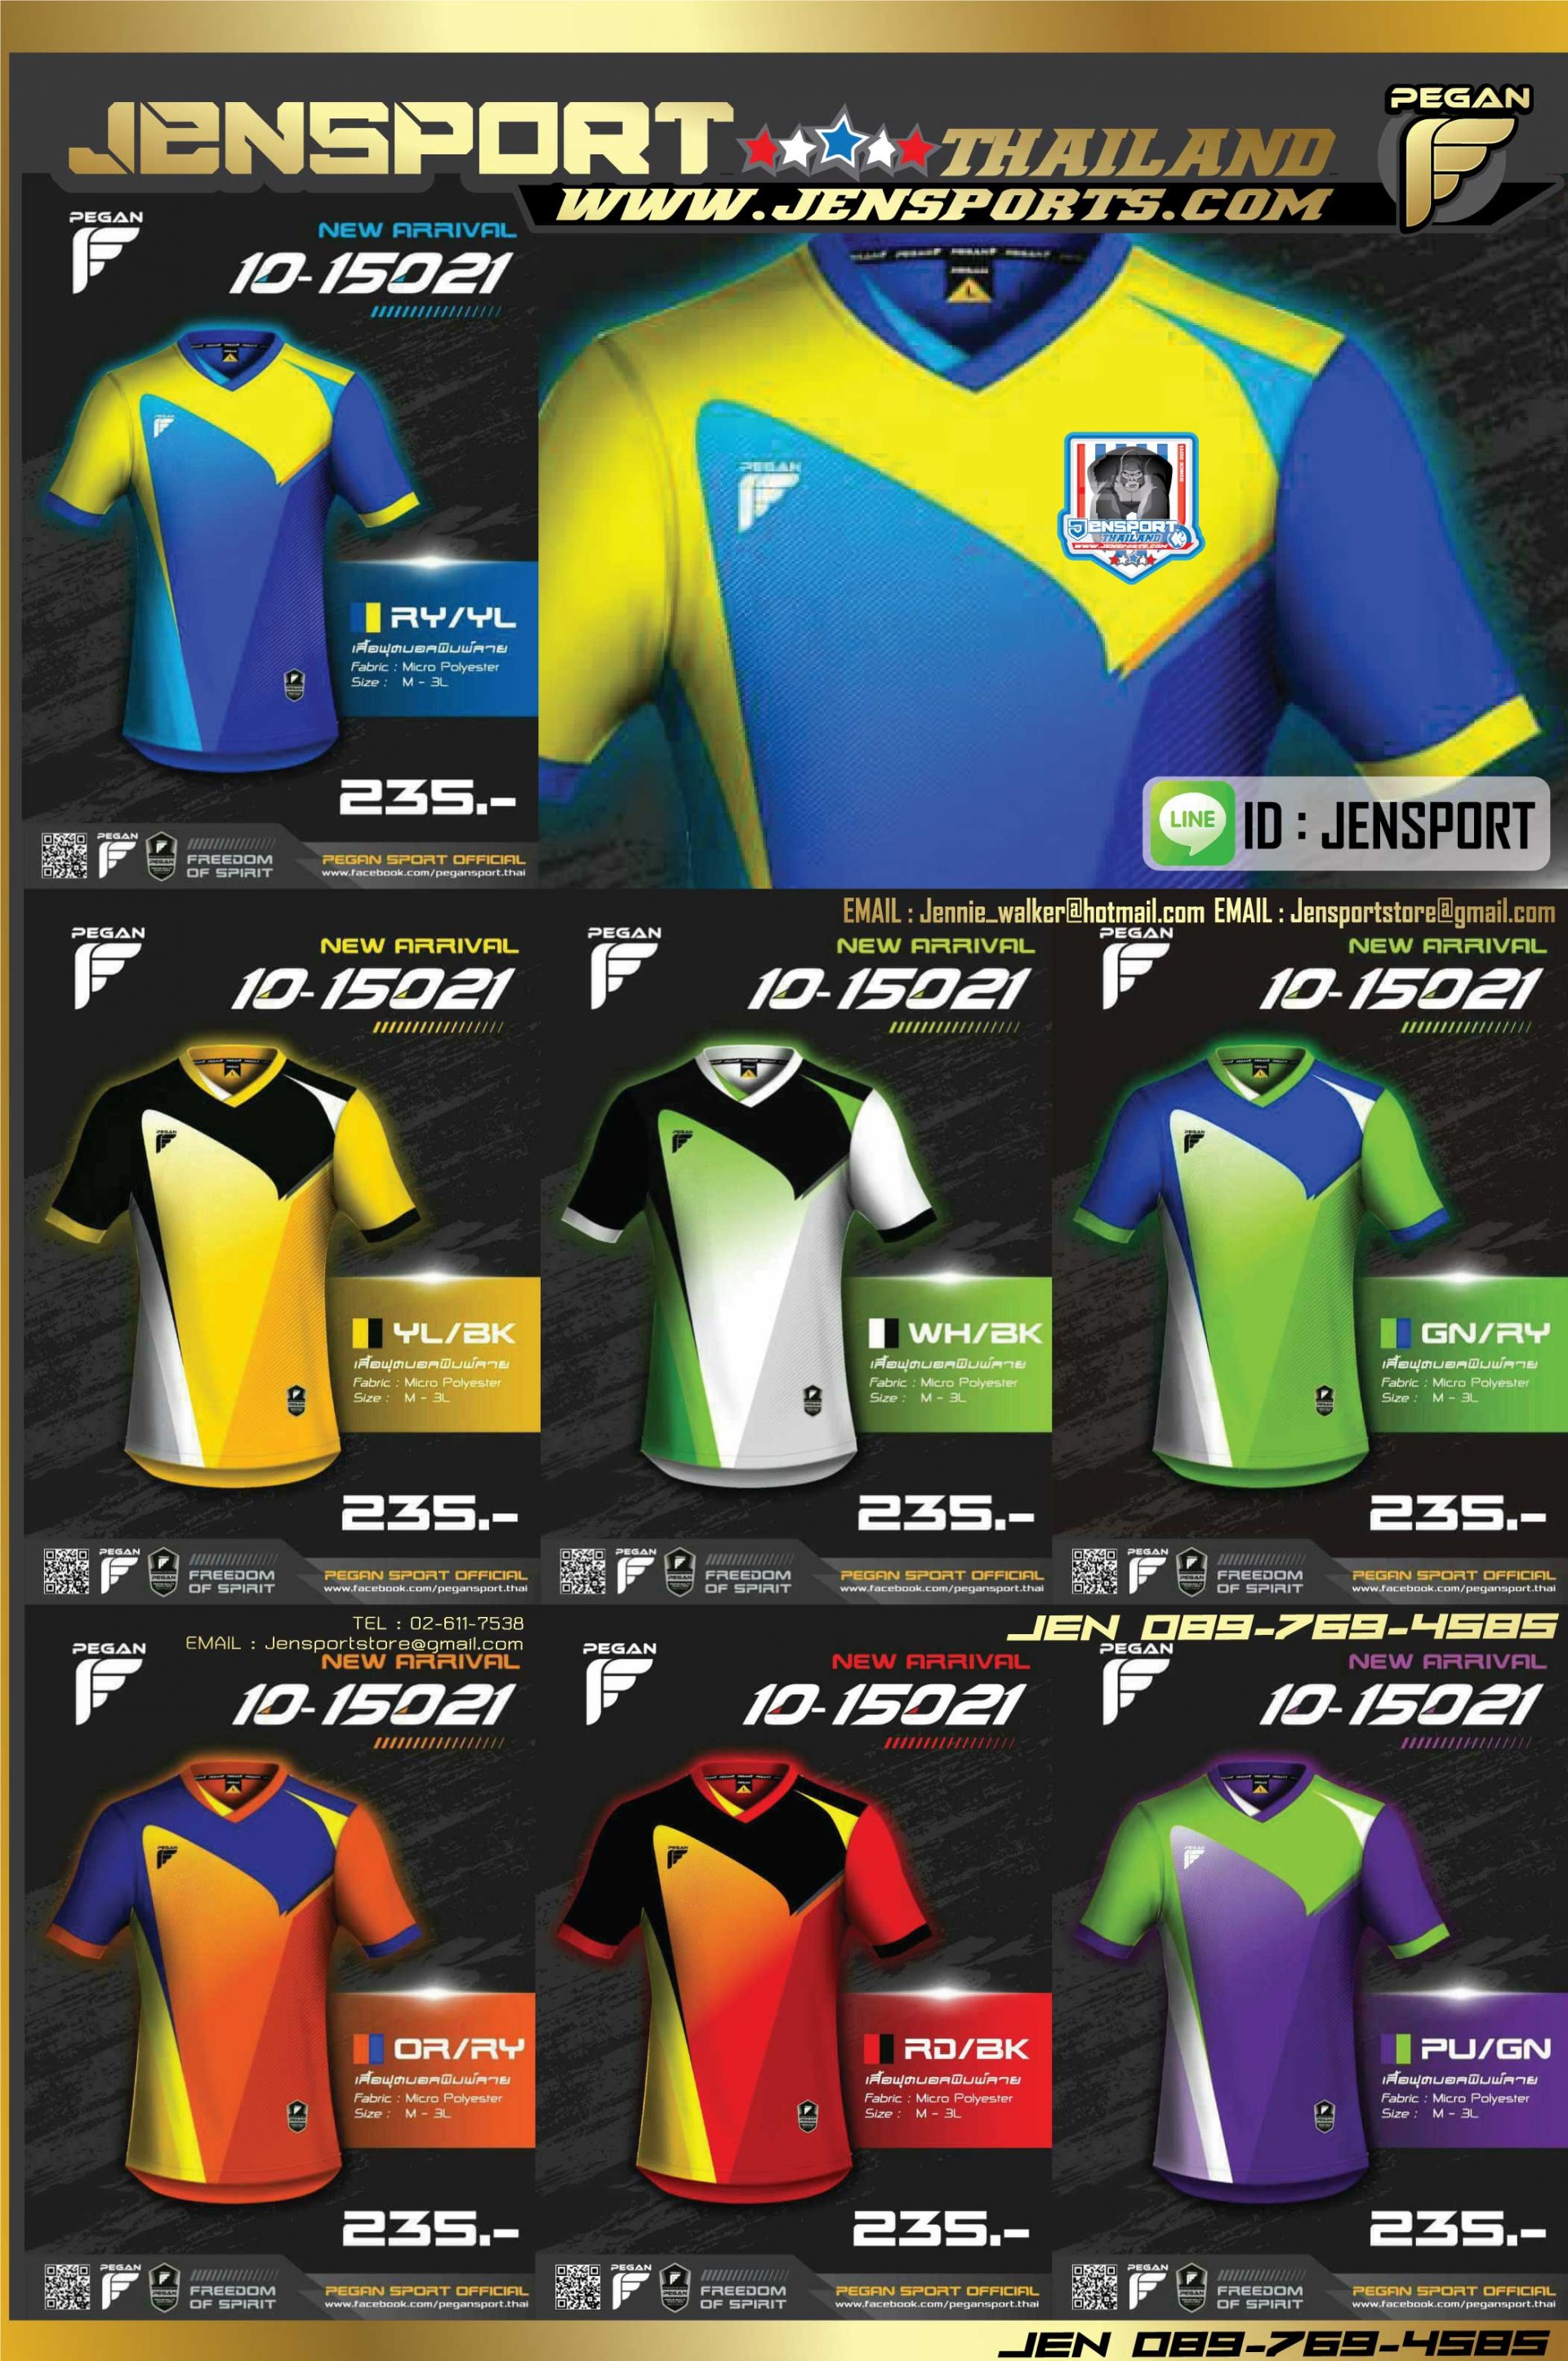 เสื้อ Pegan sport ปี 2015 รุ่น 10-15021